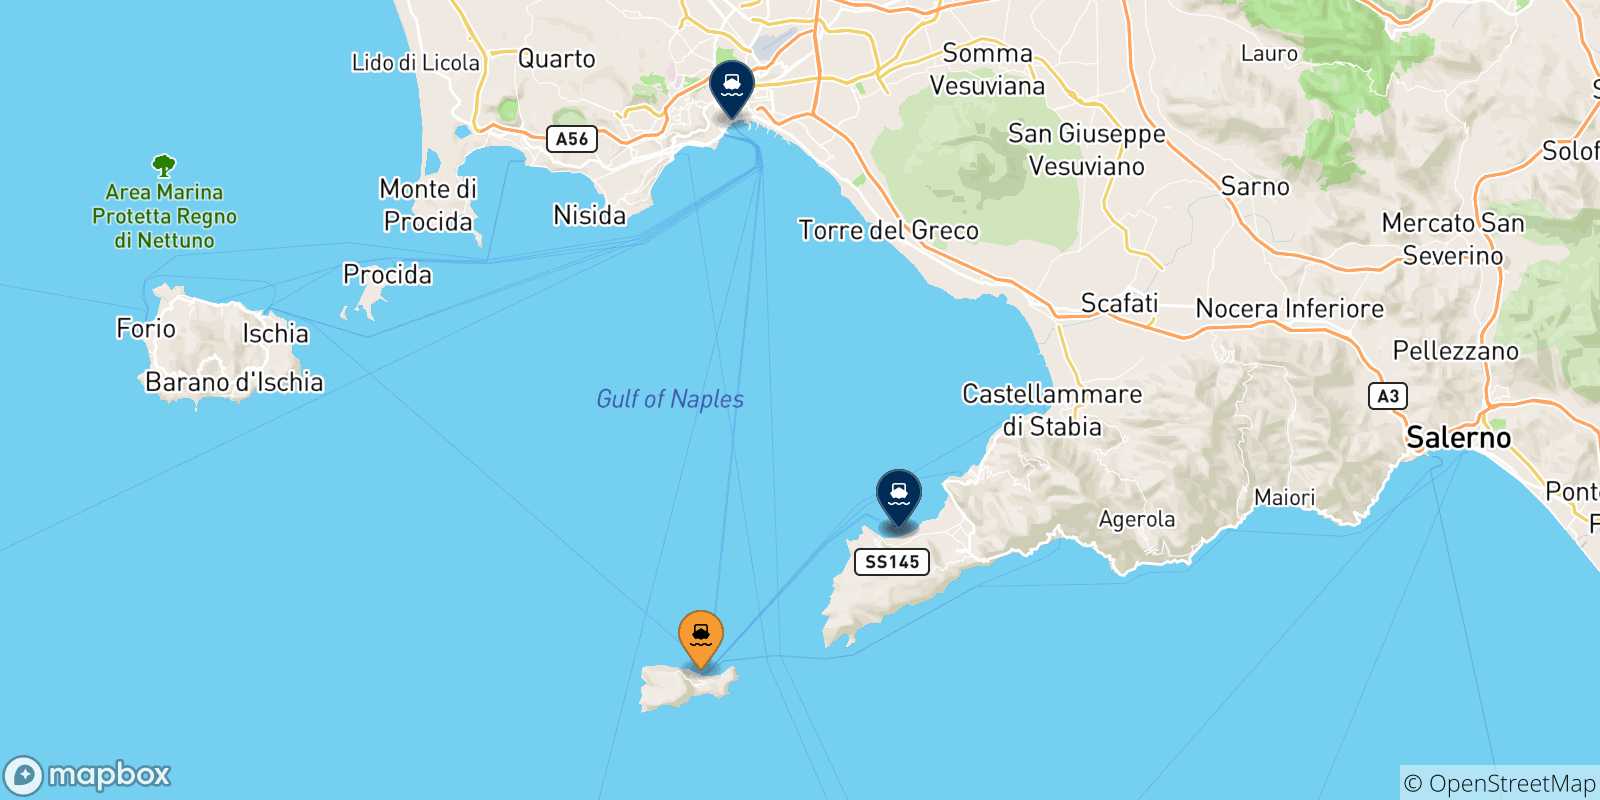 Mappa delle possibili rotte tra Capri e l'Italia